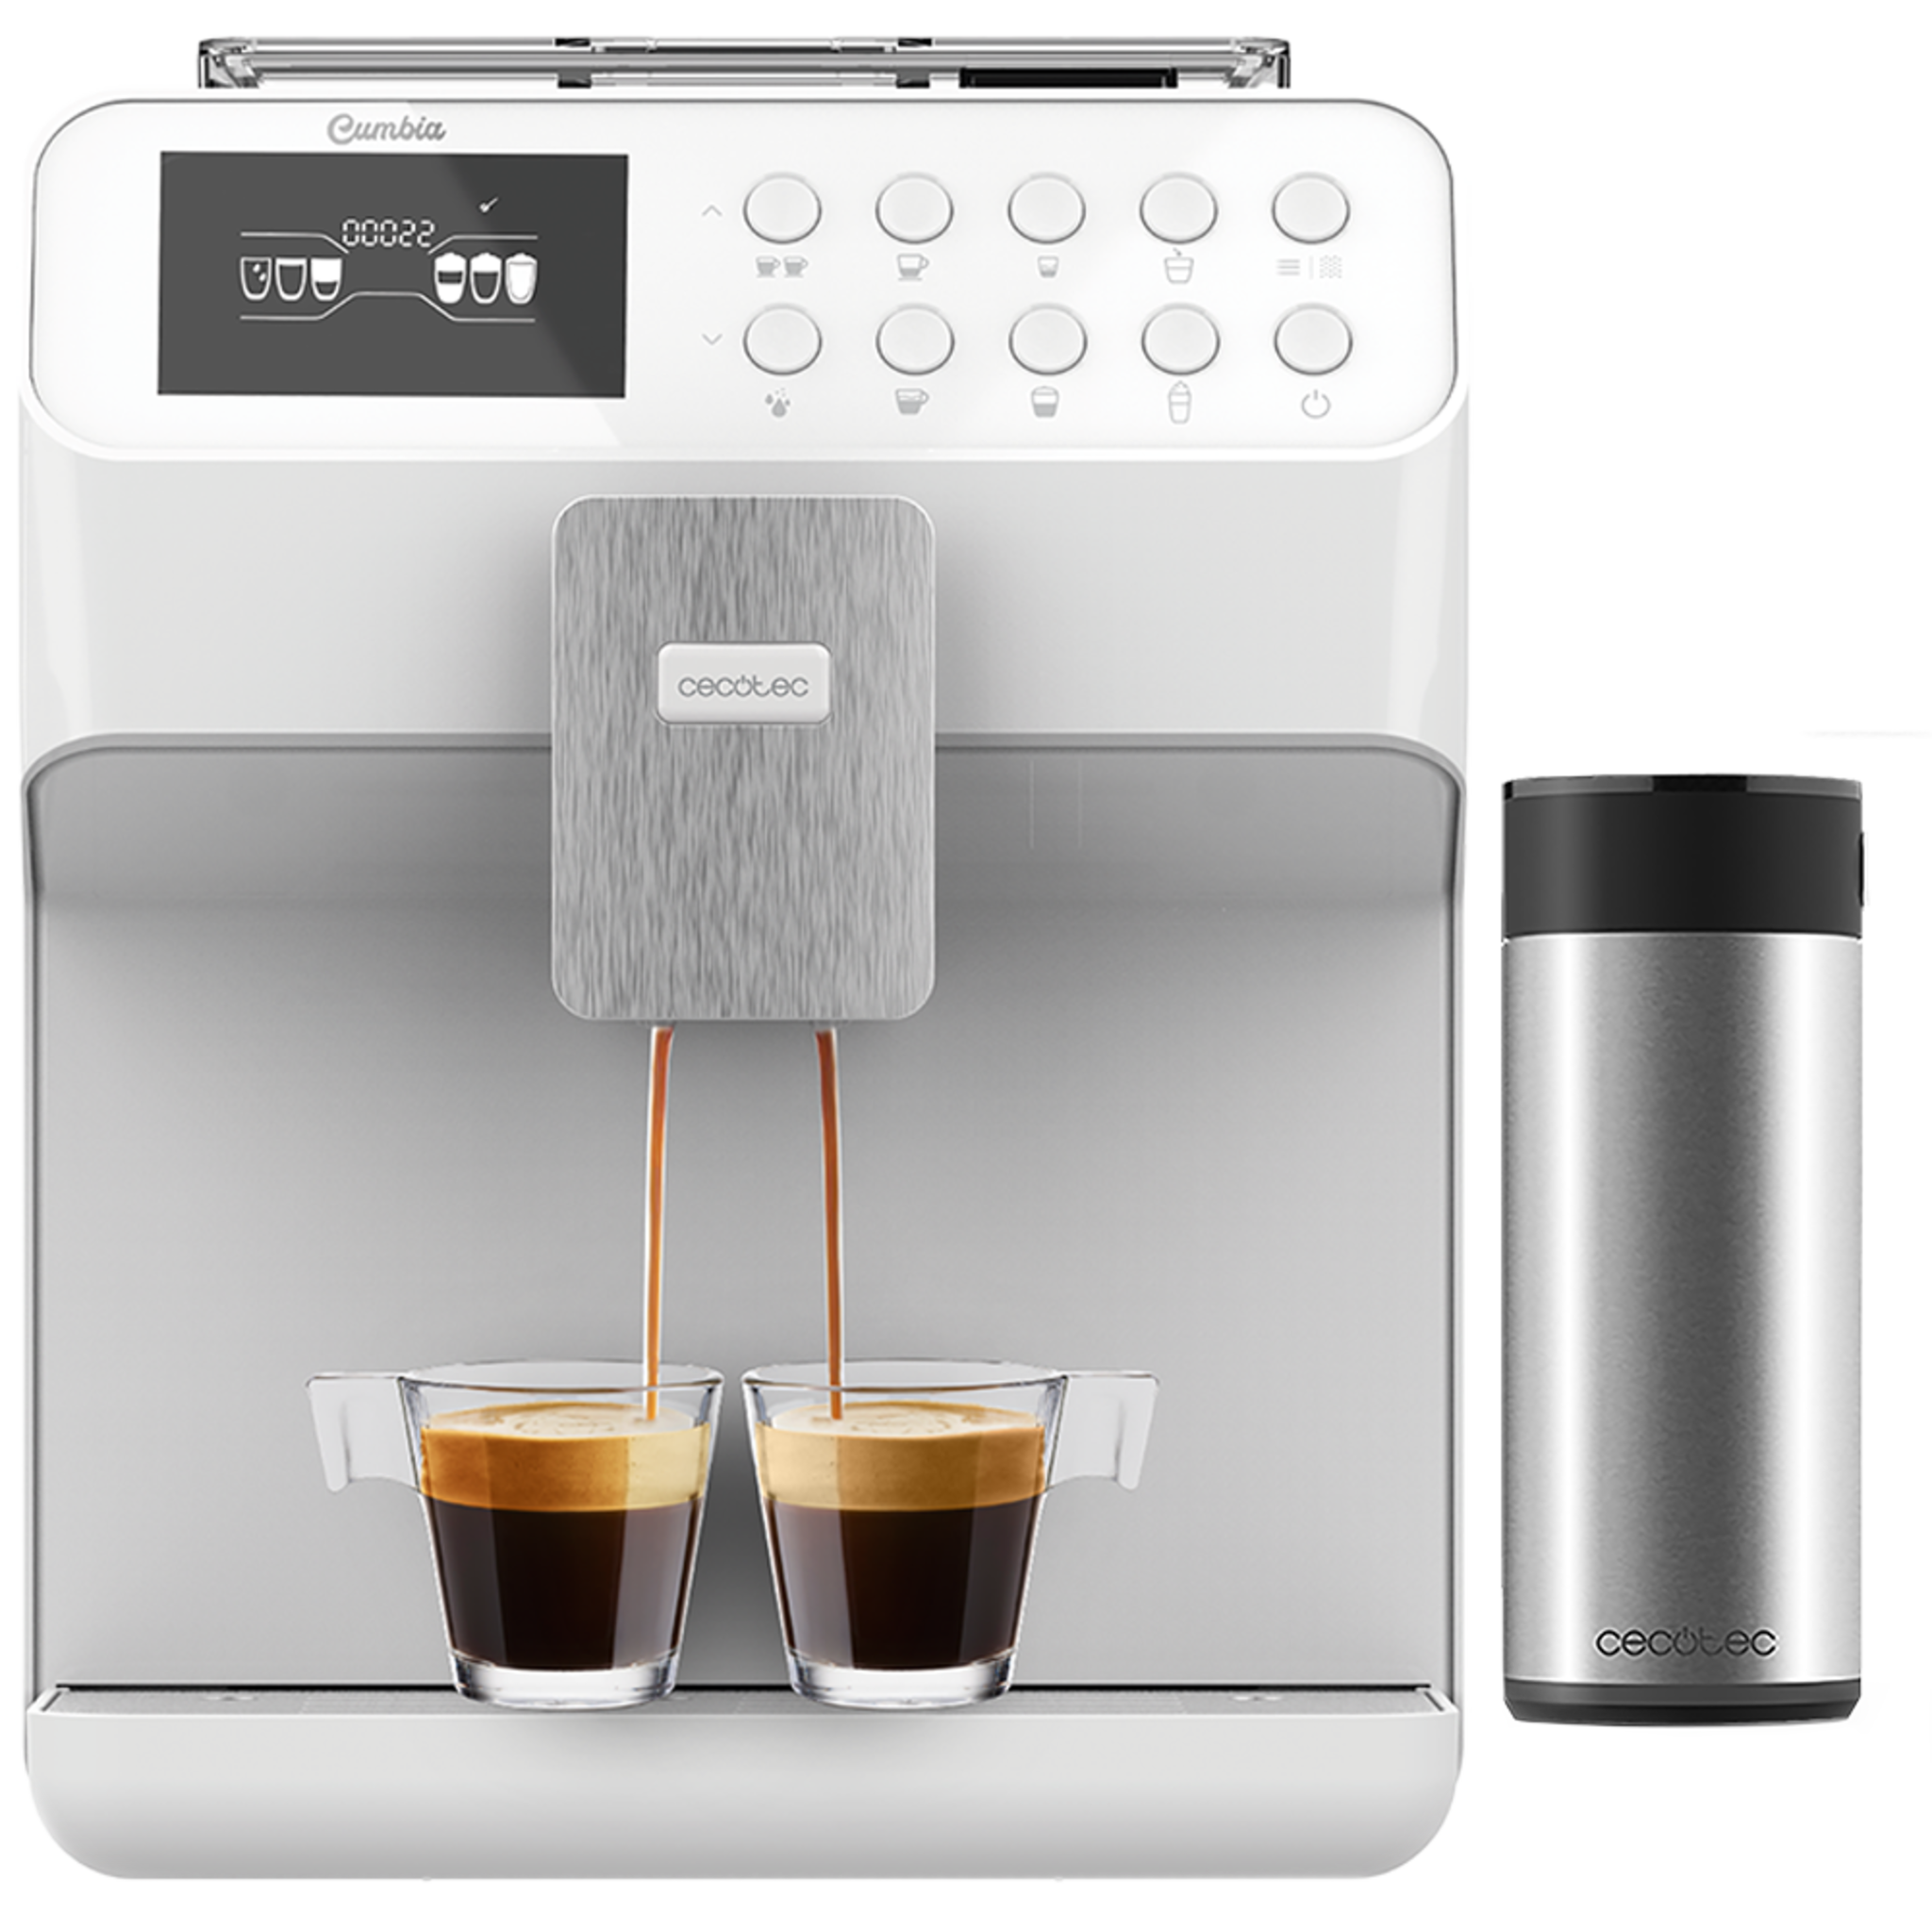 Machine à café automatique Power Matic-ccino 7000 Série Bianca. Réservoir de lait, écran numérique, café personnalisable, technologie ForceAroma, 19 bars de pression et plateau réchauffe-tasses